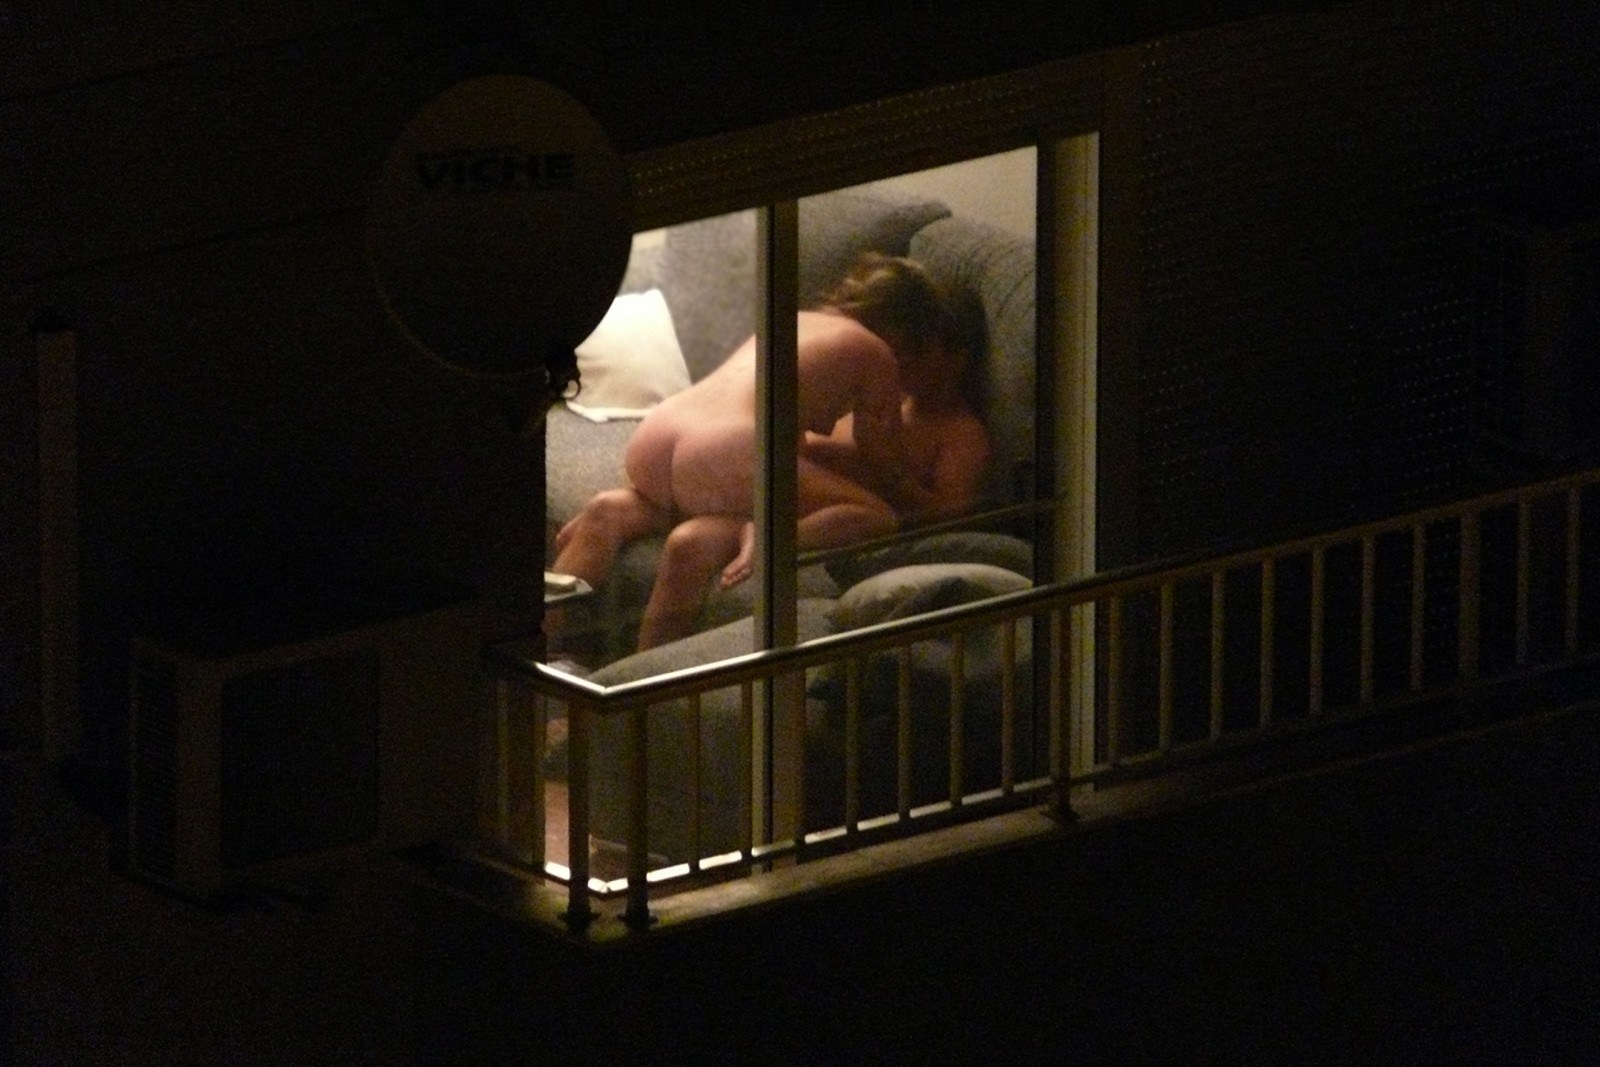 PEEPING THROUGH Windows At Naked People (72 photos)